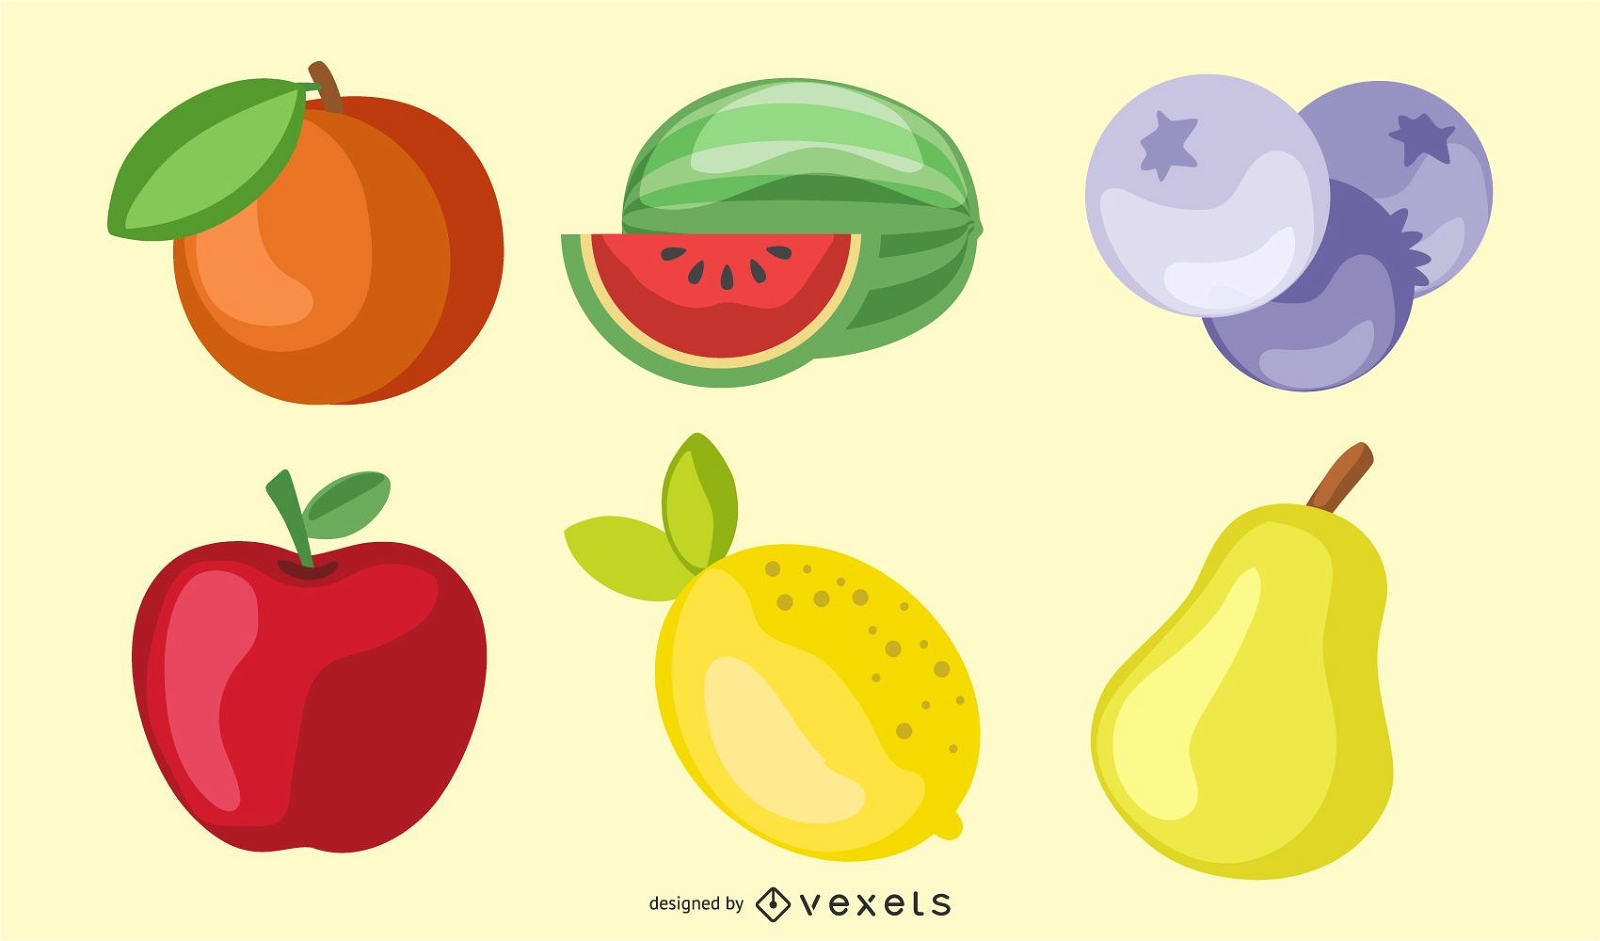 shiny fruits illustration set